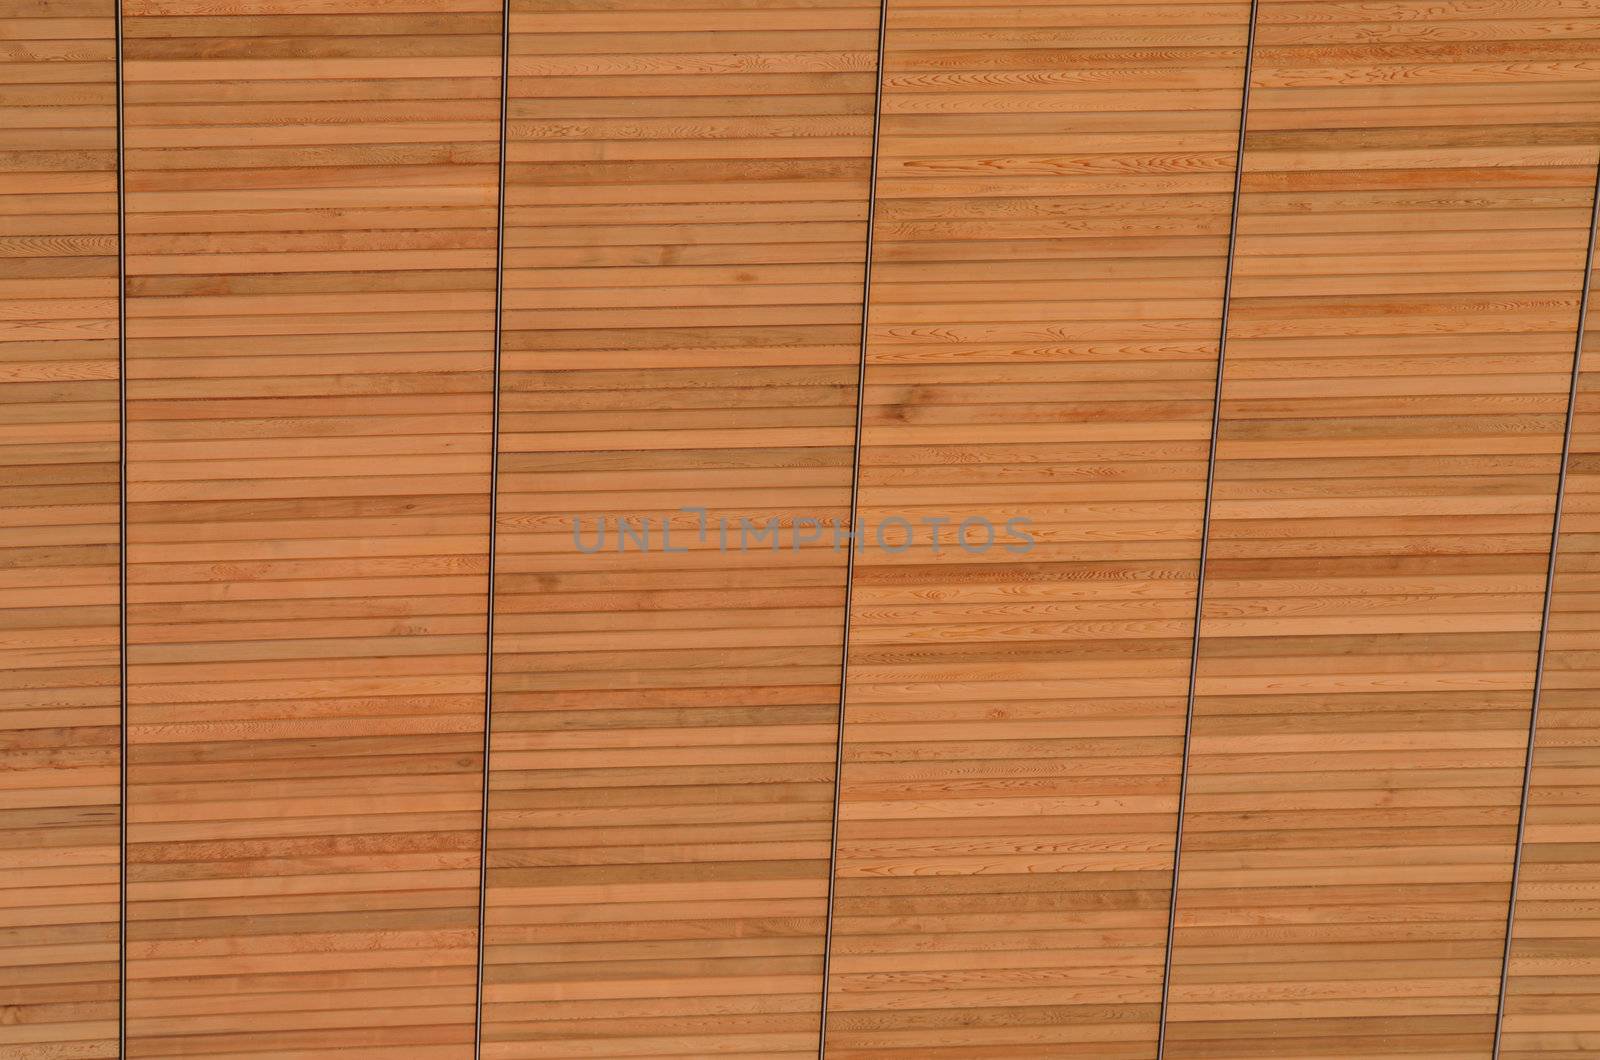 Wooden pattern by pauws99